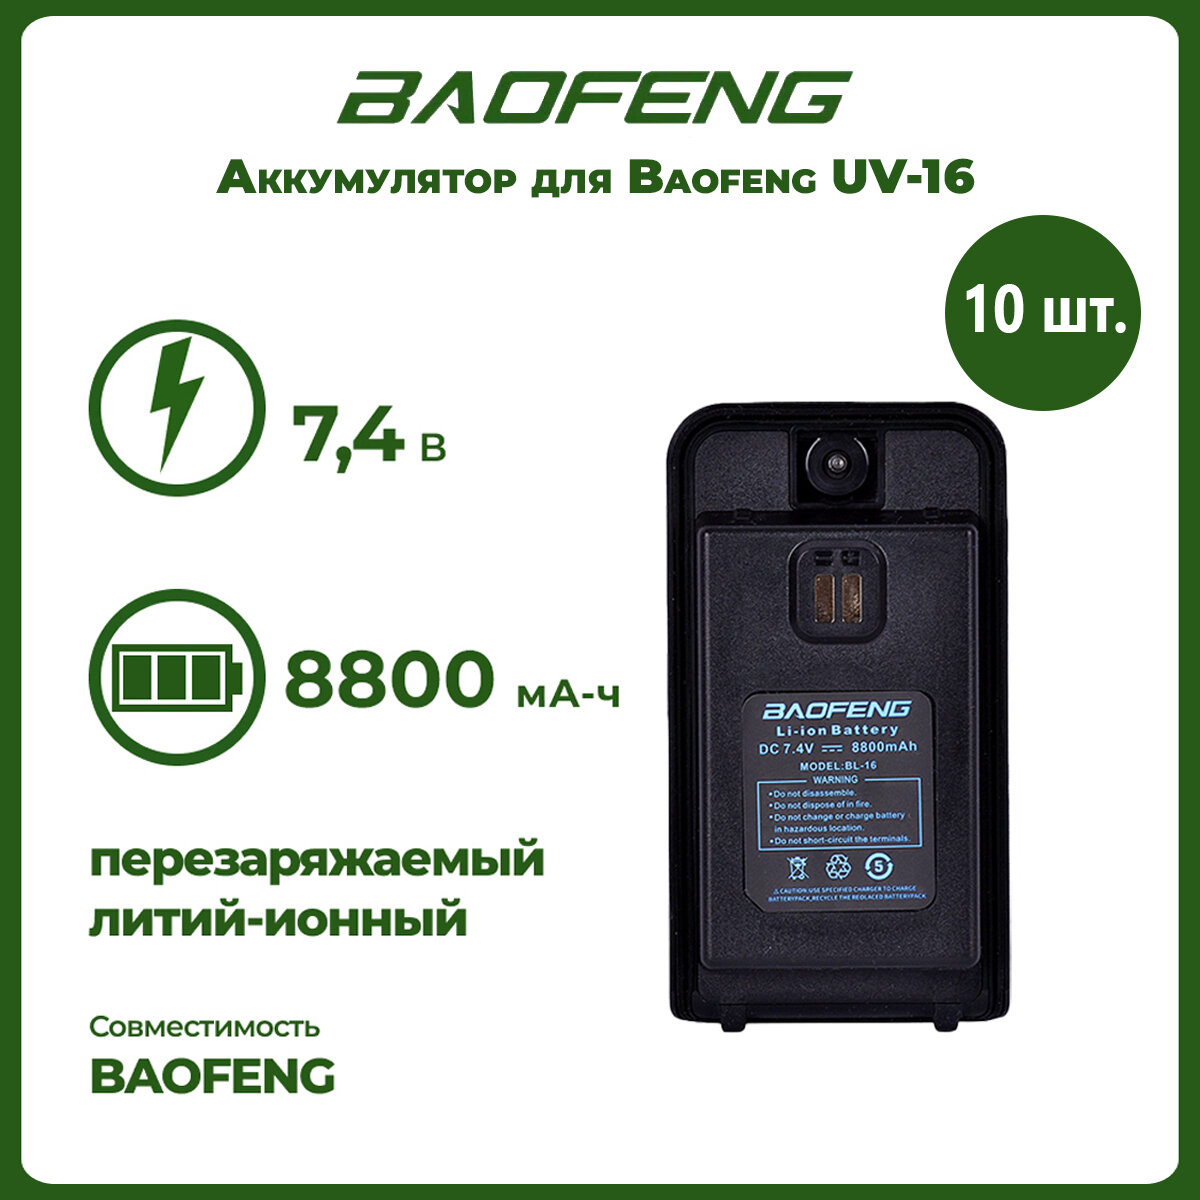 Аккумулятор для рации Baofeng UV-16 1800 mAh, комплект 10 шт